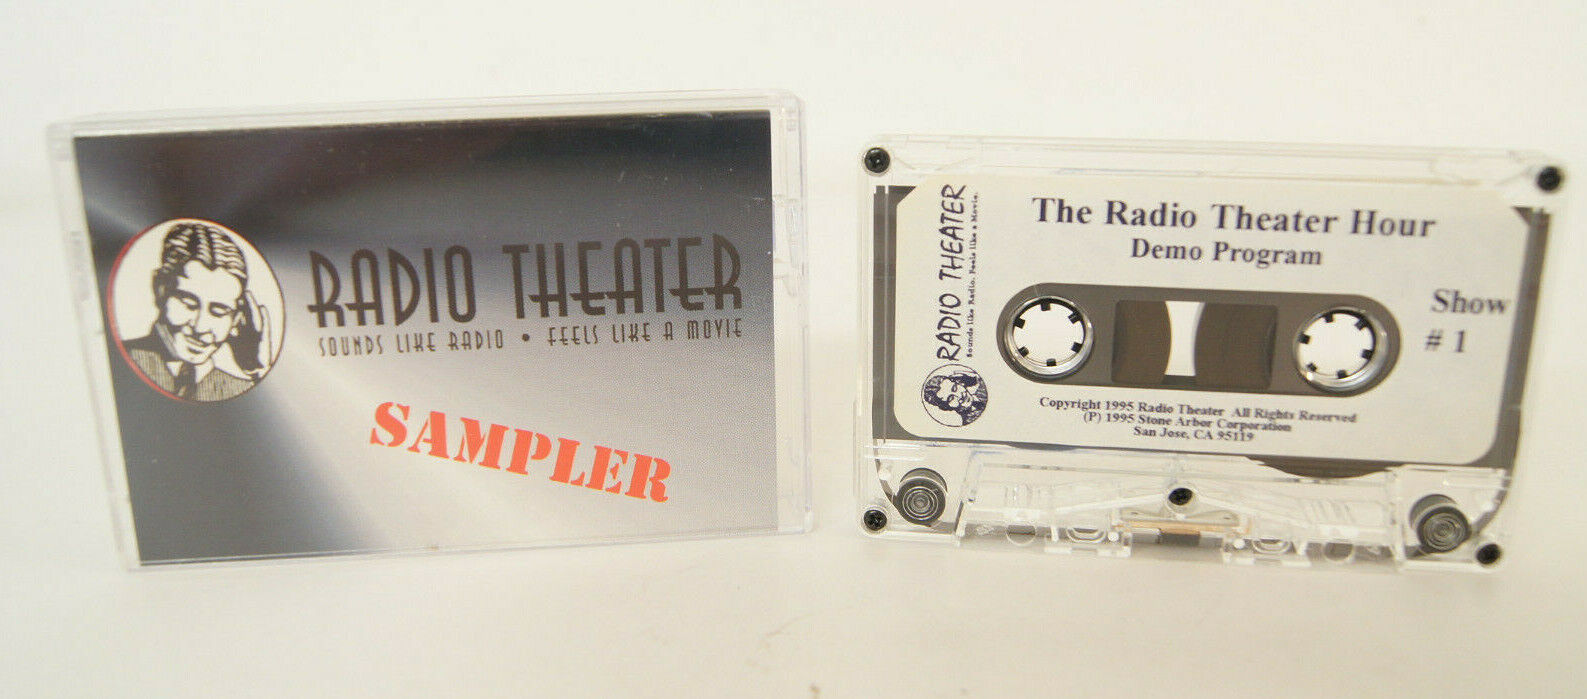 *Rare* The Radio Theater Hour Sampler Demo Program Cassette Tape 1995 Stone Arbo